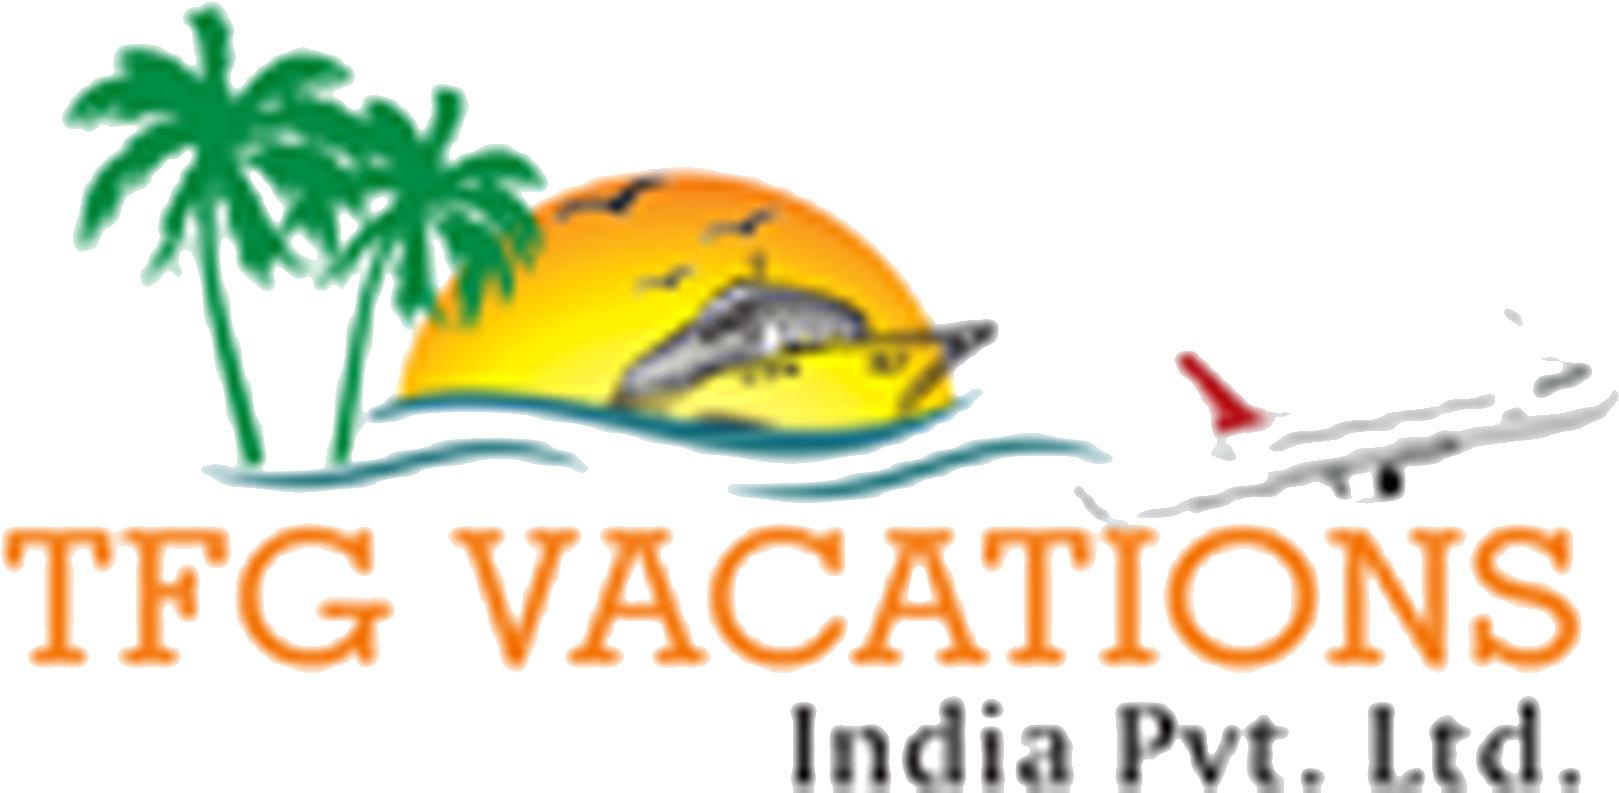 Tfg Logo - Tfg Vacations India Pvt Ltd (1920x801)